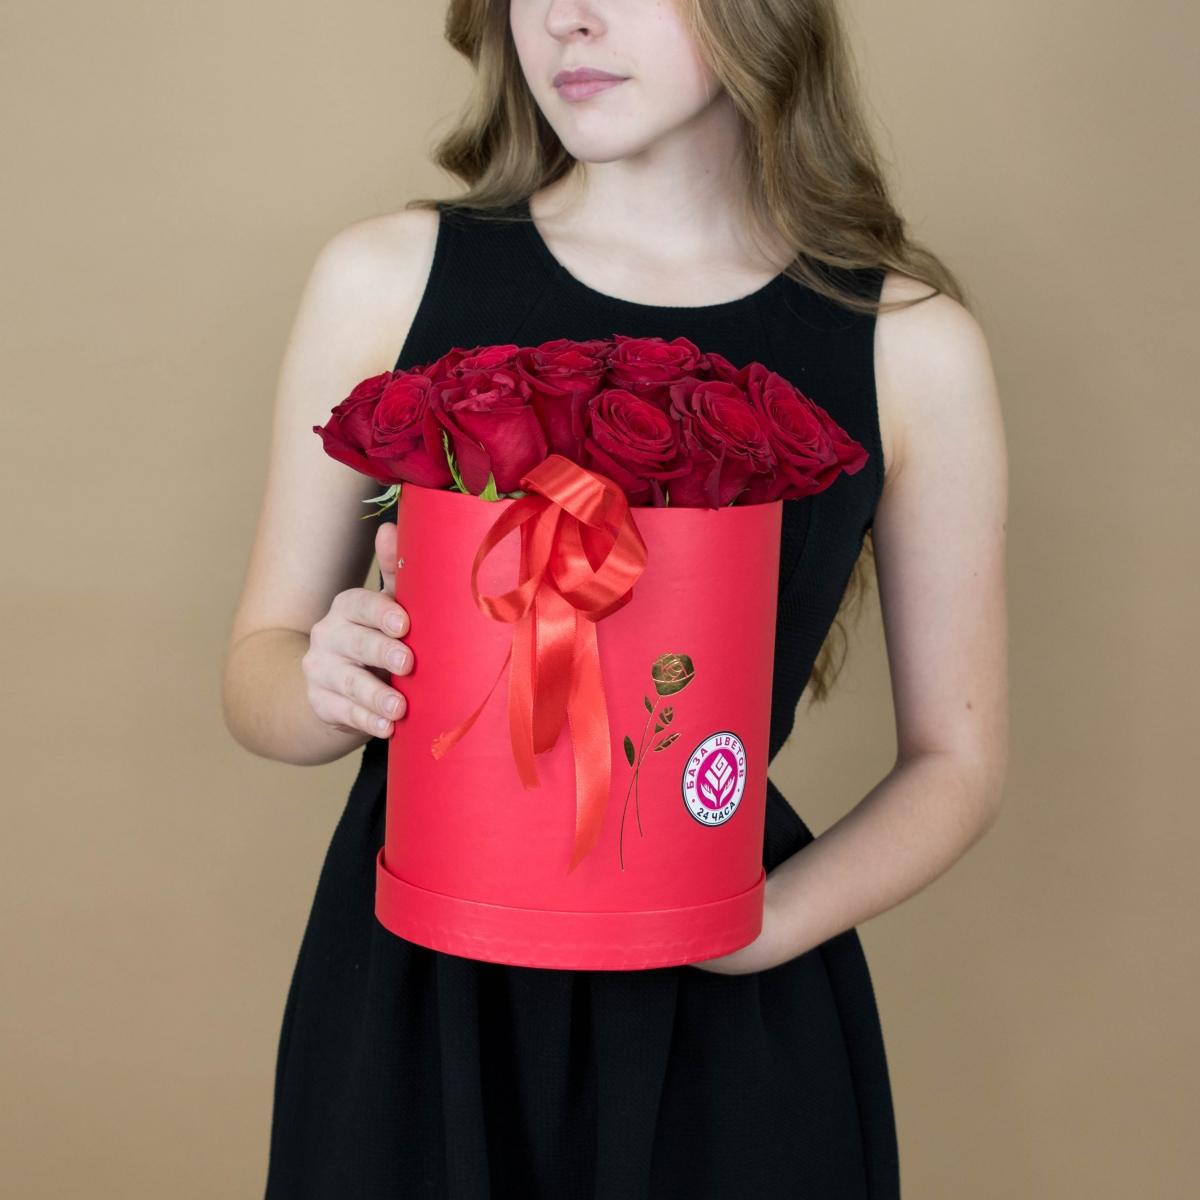 Розы красные в шляпной коробке (артикул букета: 2236)